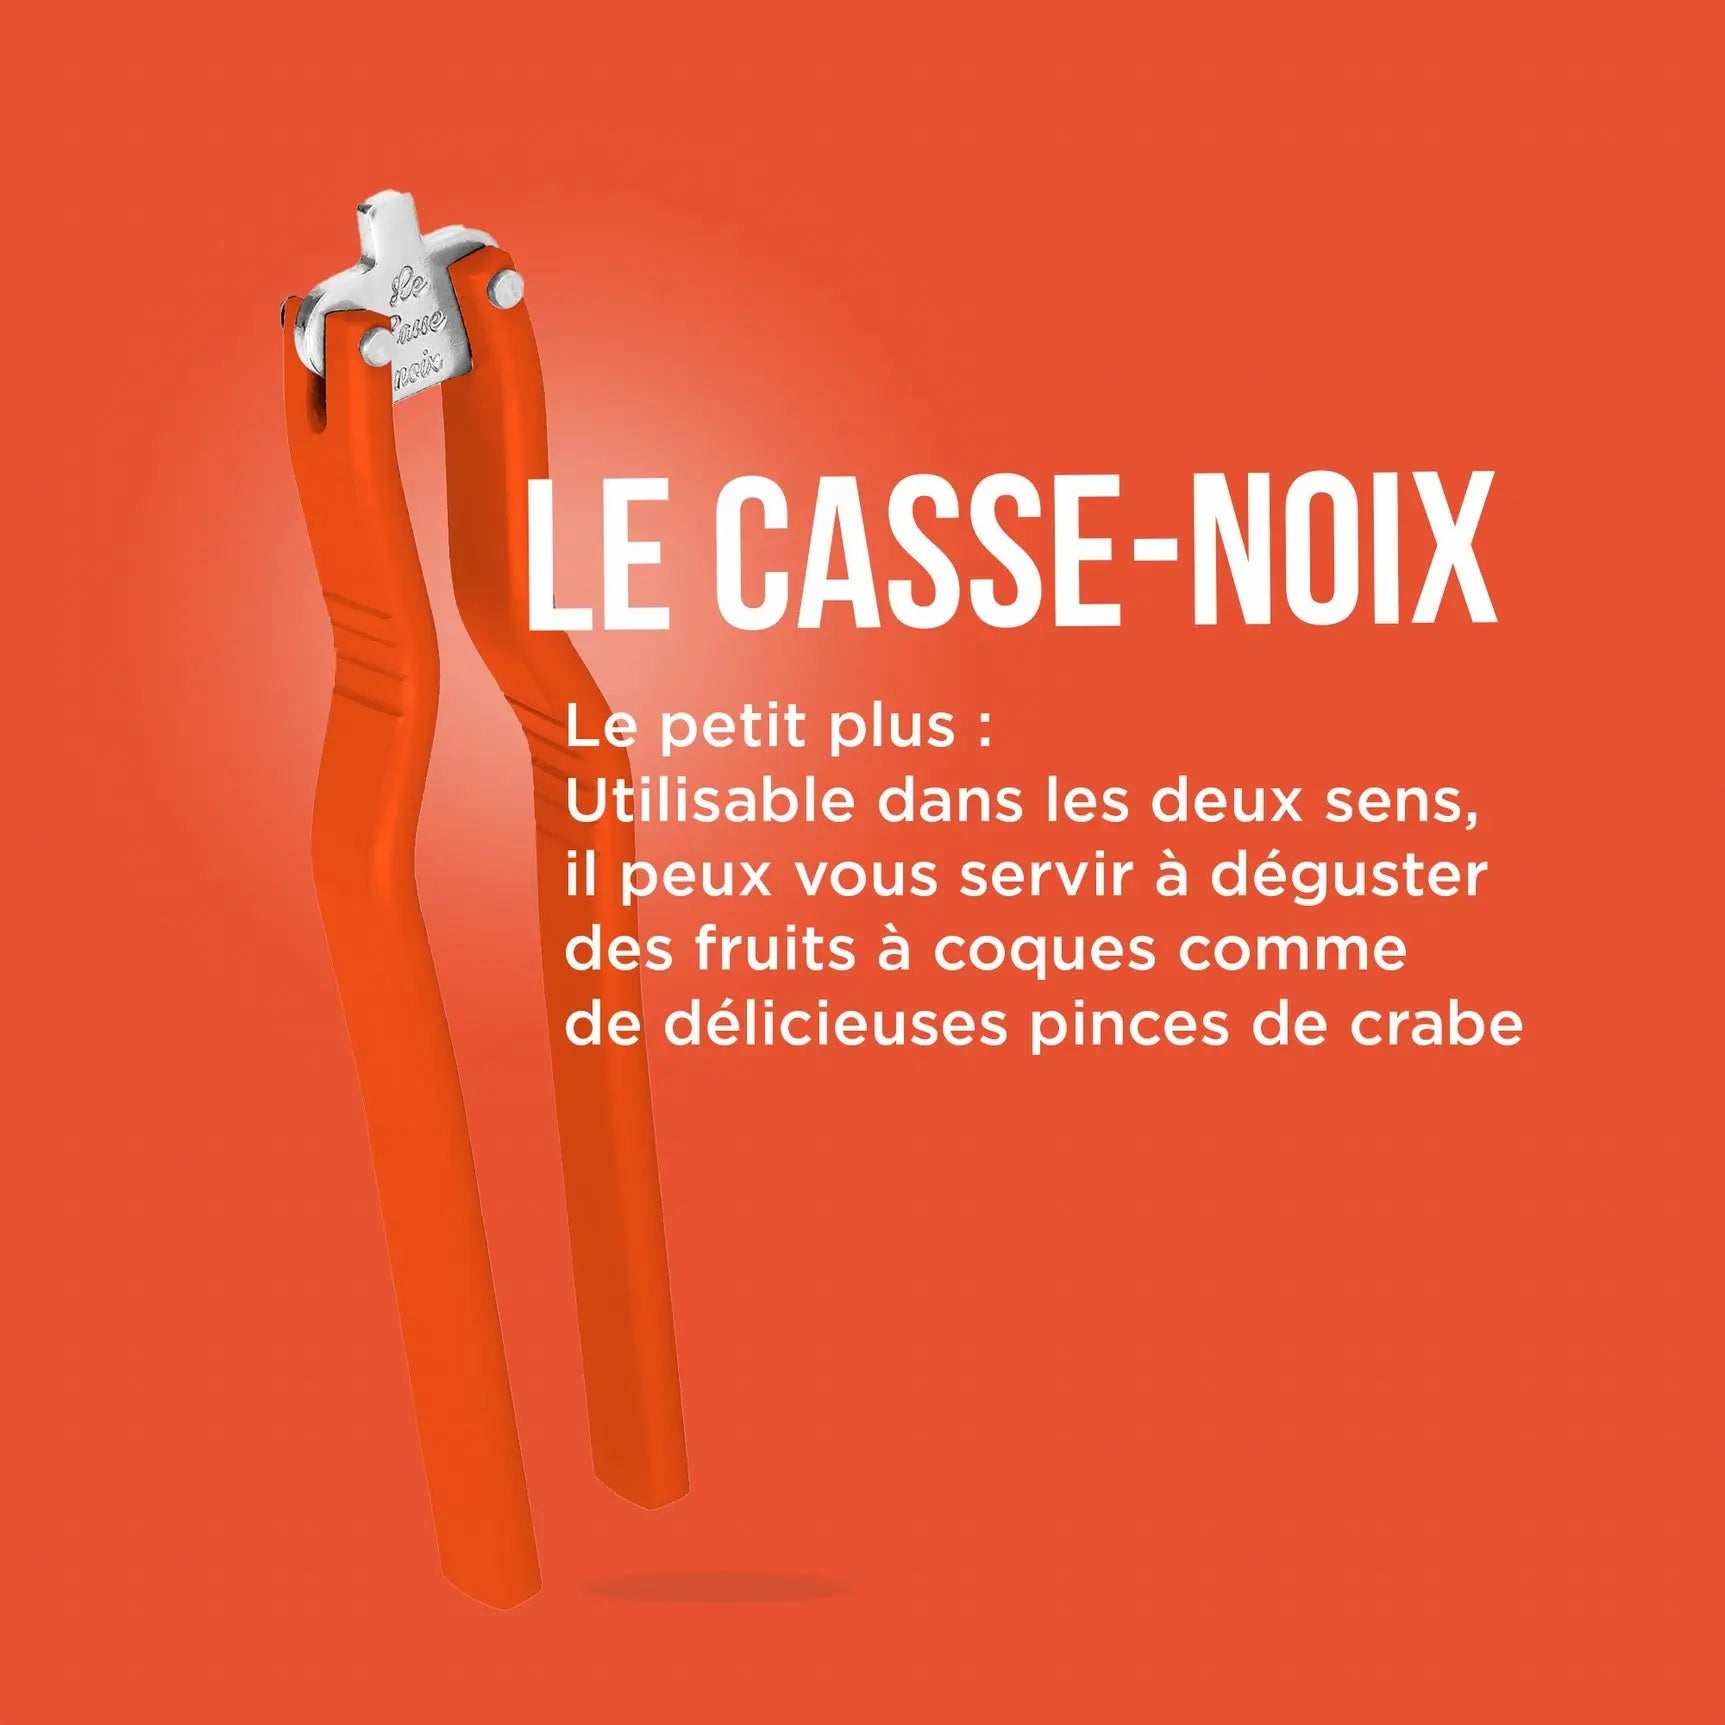 Le Casse-noix - La Carafe 